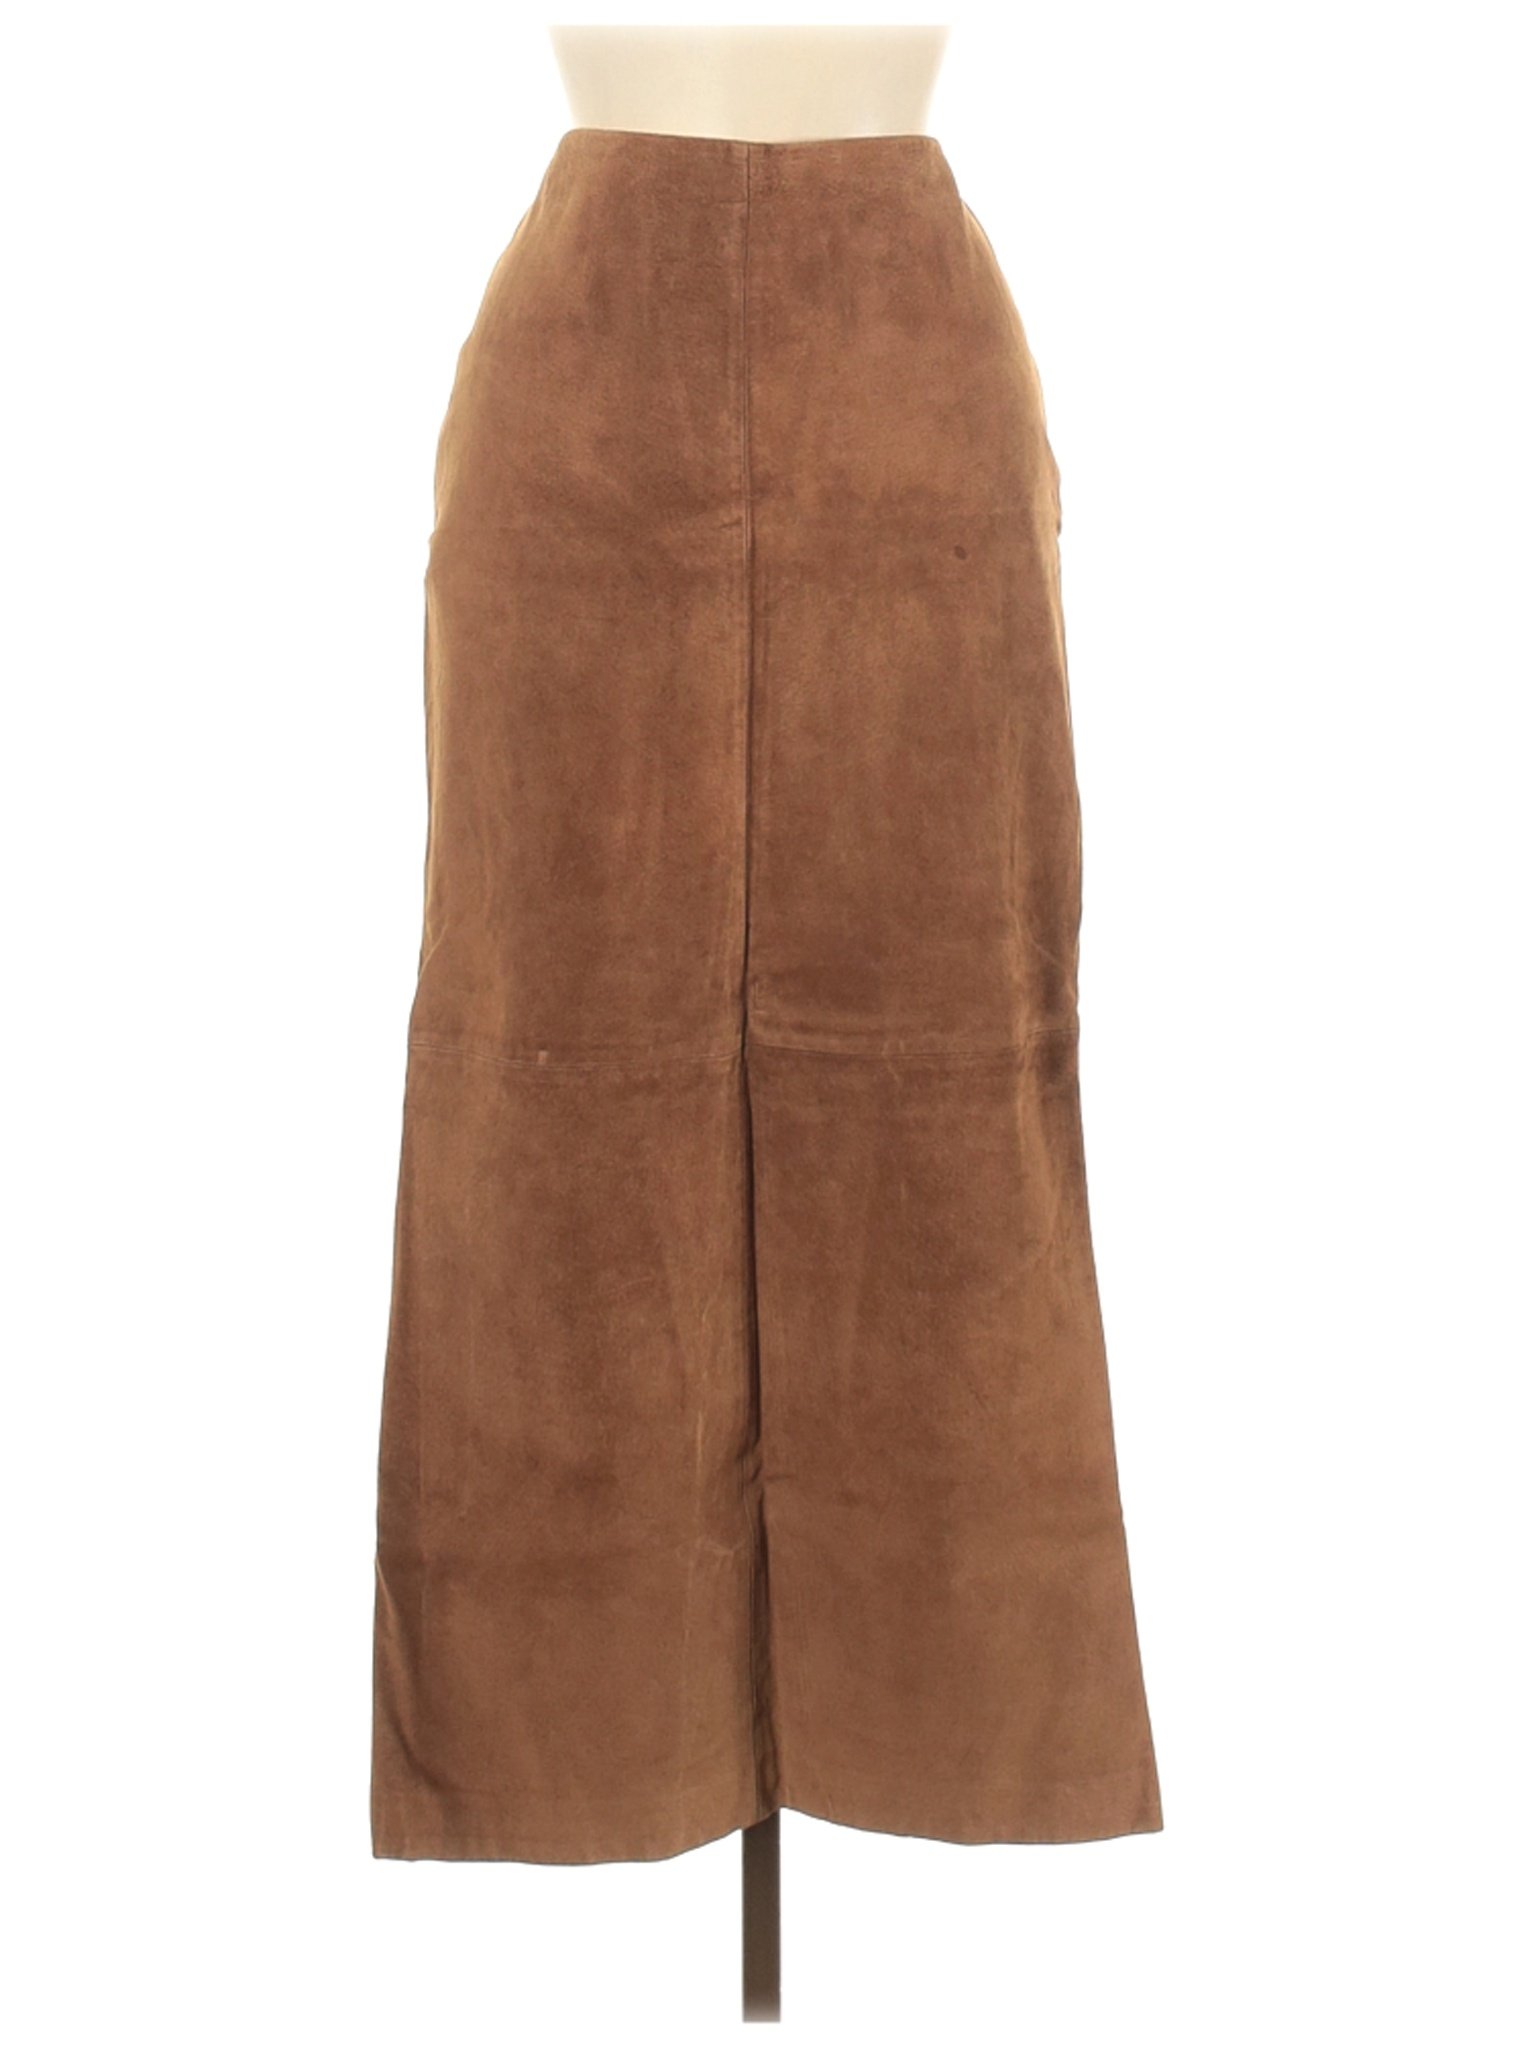 Lauren by Ralph Lauren Women Brown Leather Skirt 8 | eBay